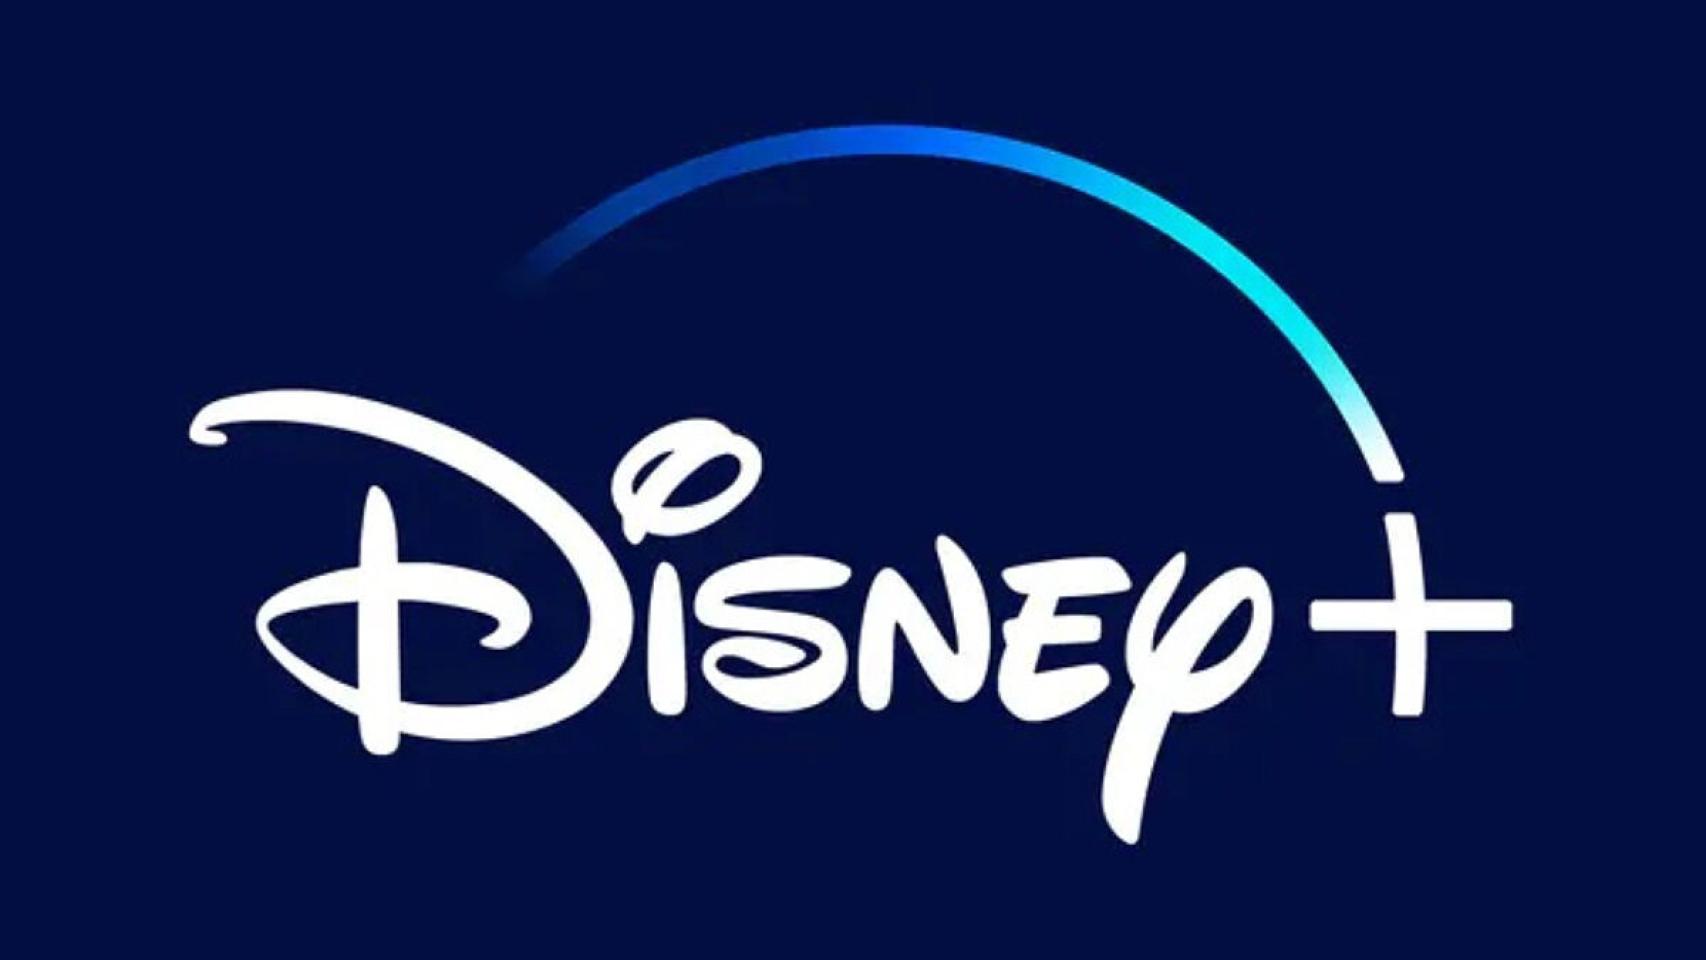 Disney+ anuncia una promoción por tiempo limitado: así se quedaría el precio mensual con la rebaja